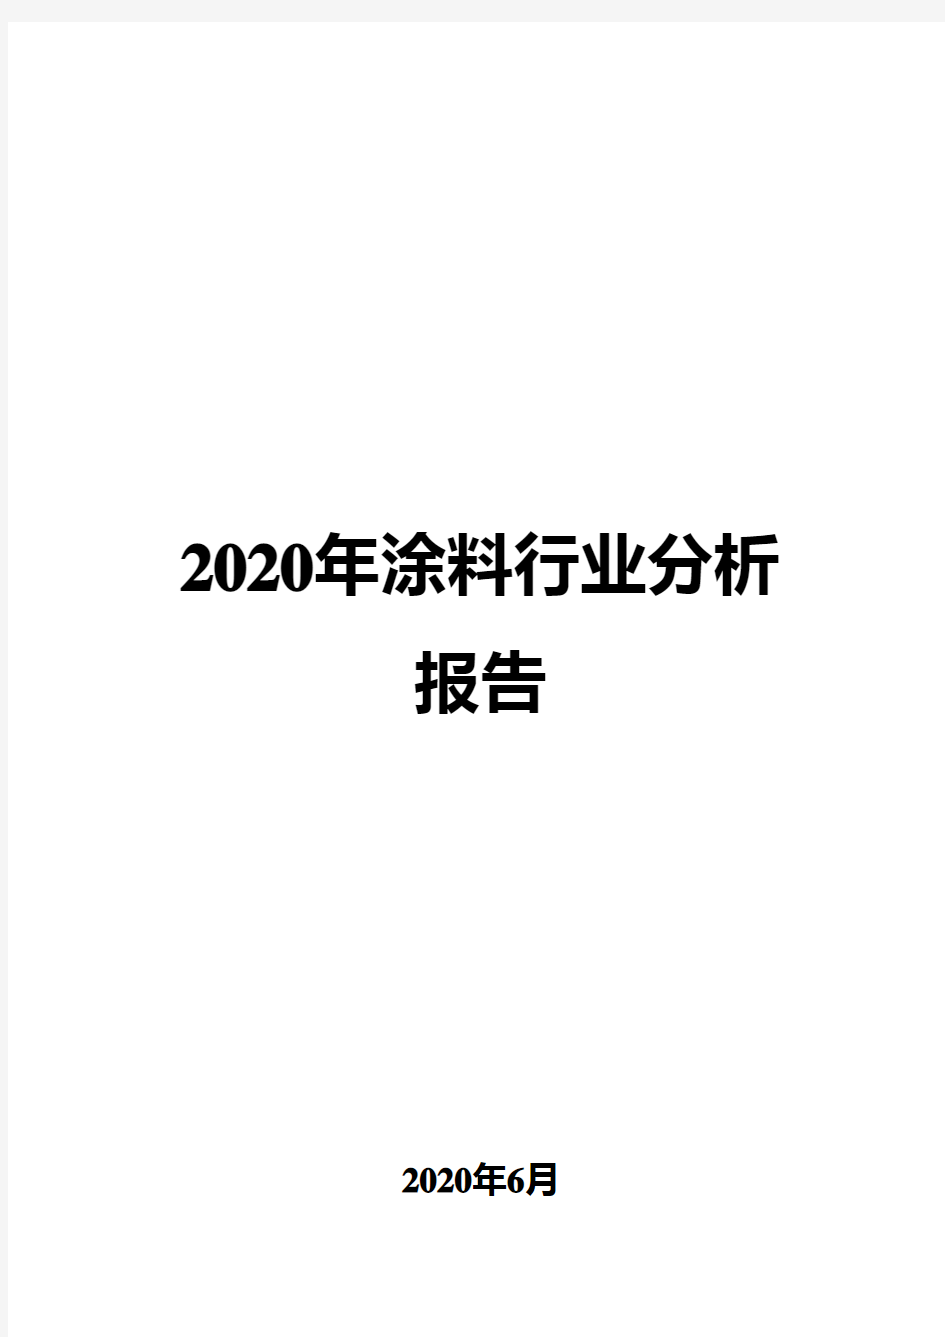 2020年涂料行业分析报告